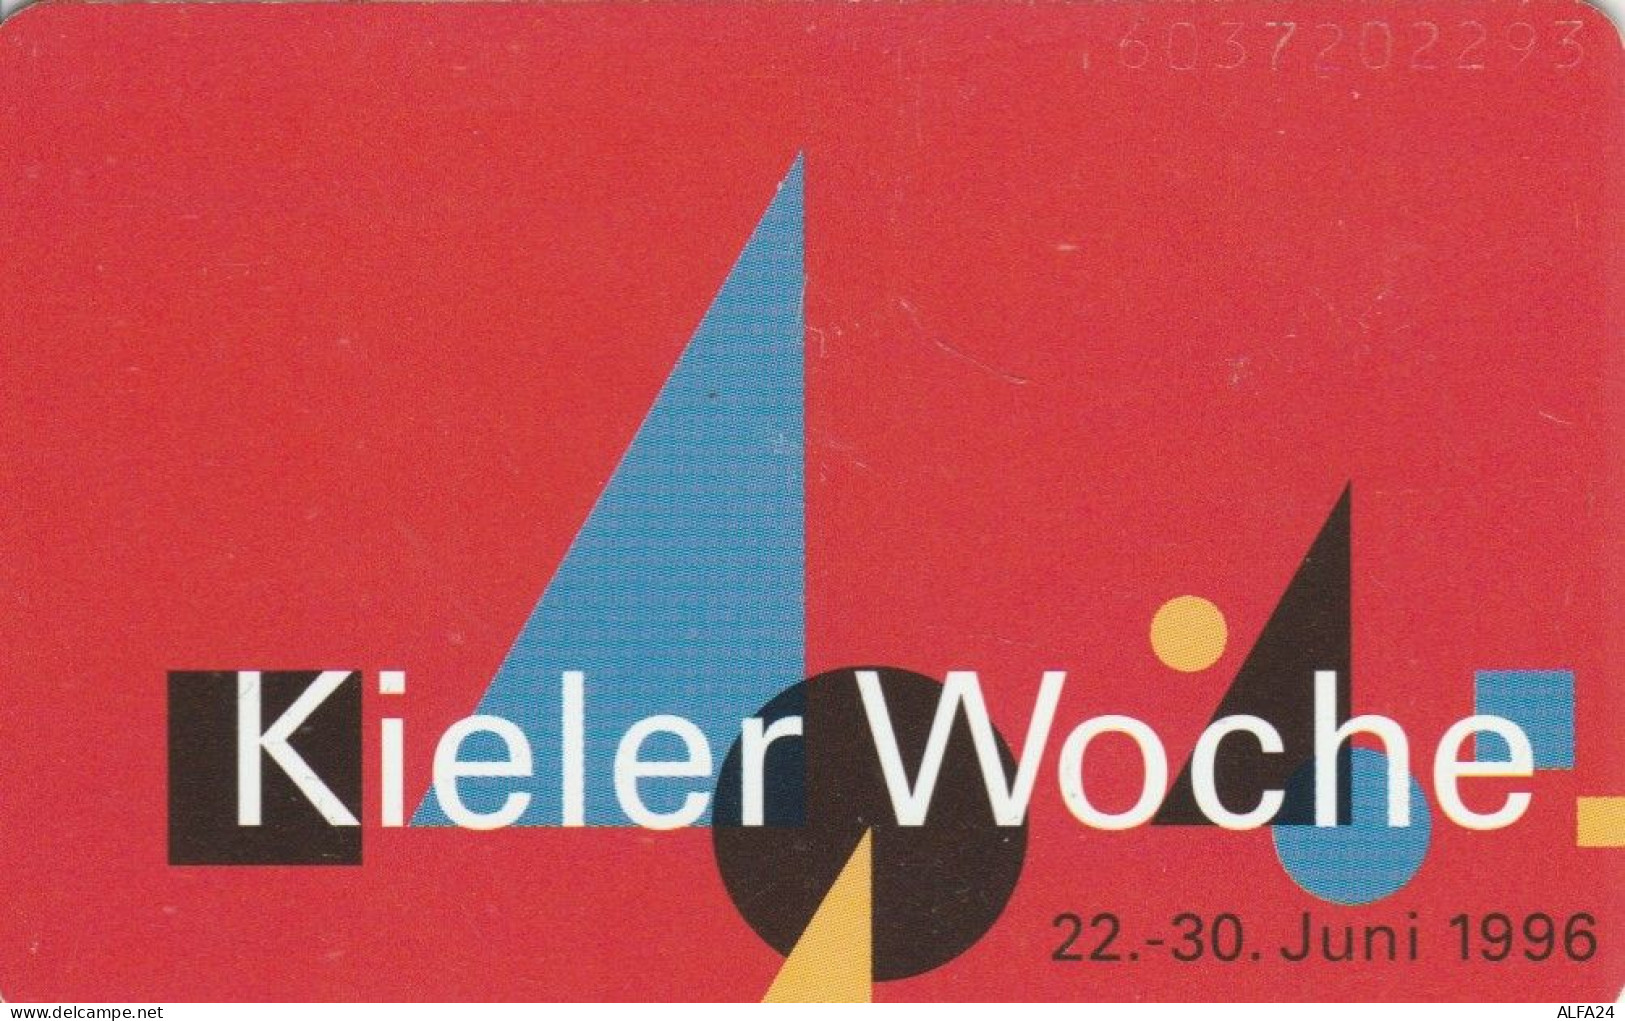 PHONE CARD GERMANIA SERIE P (CK6335 - P & PD-Reeksen : Loket Van D. Telekom